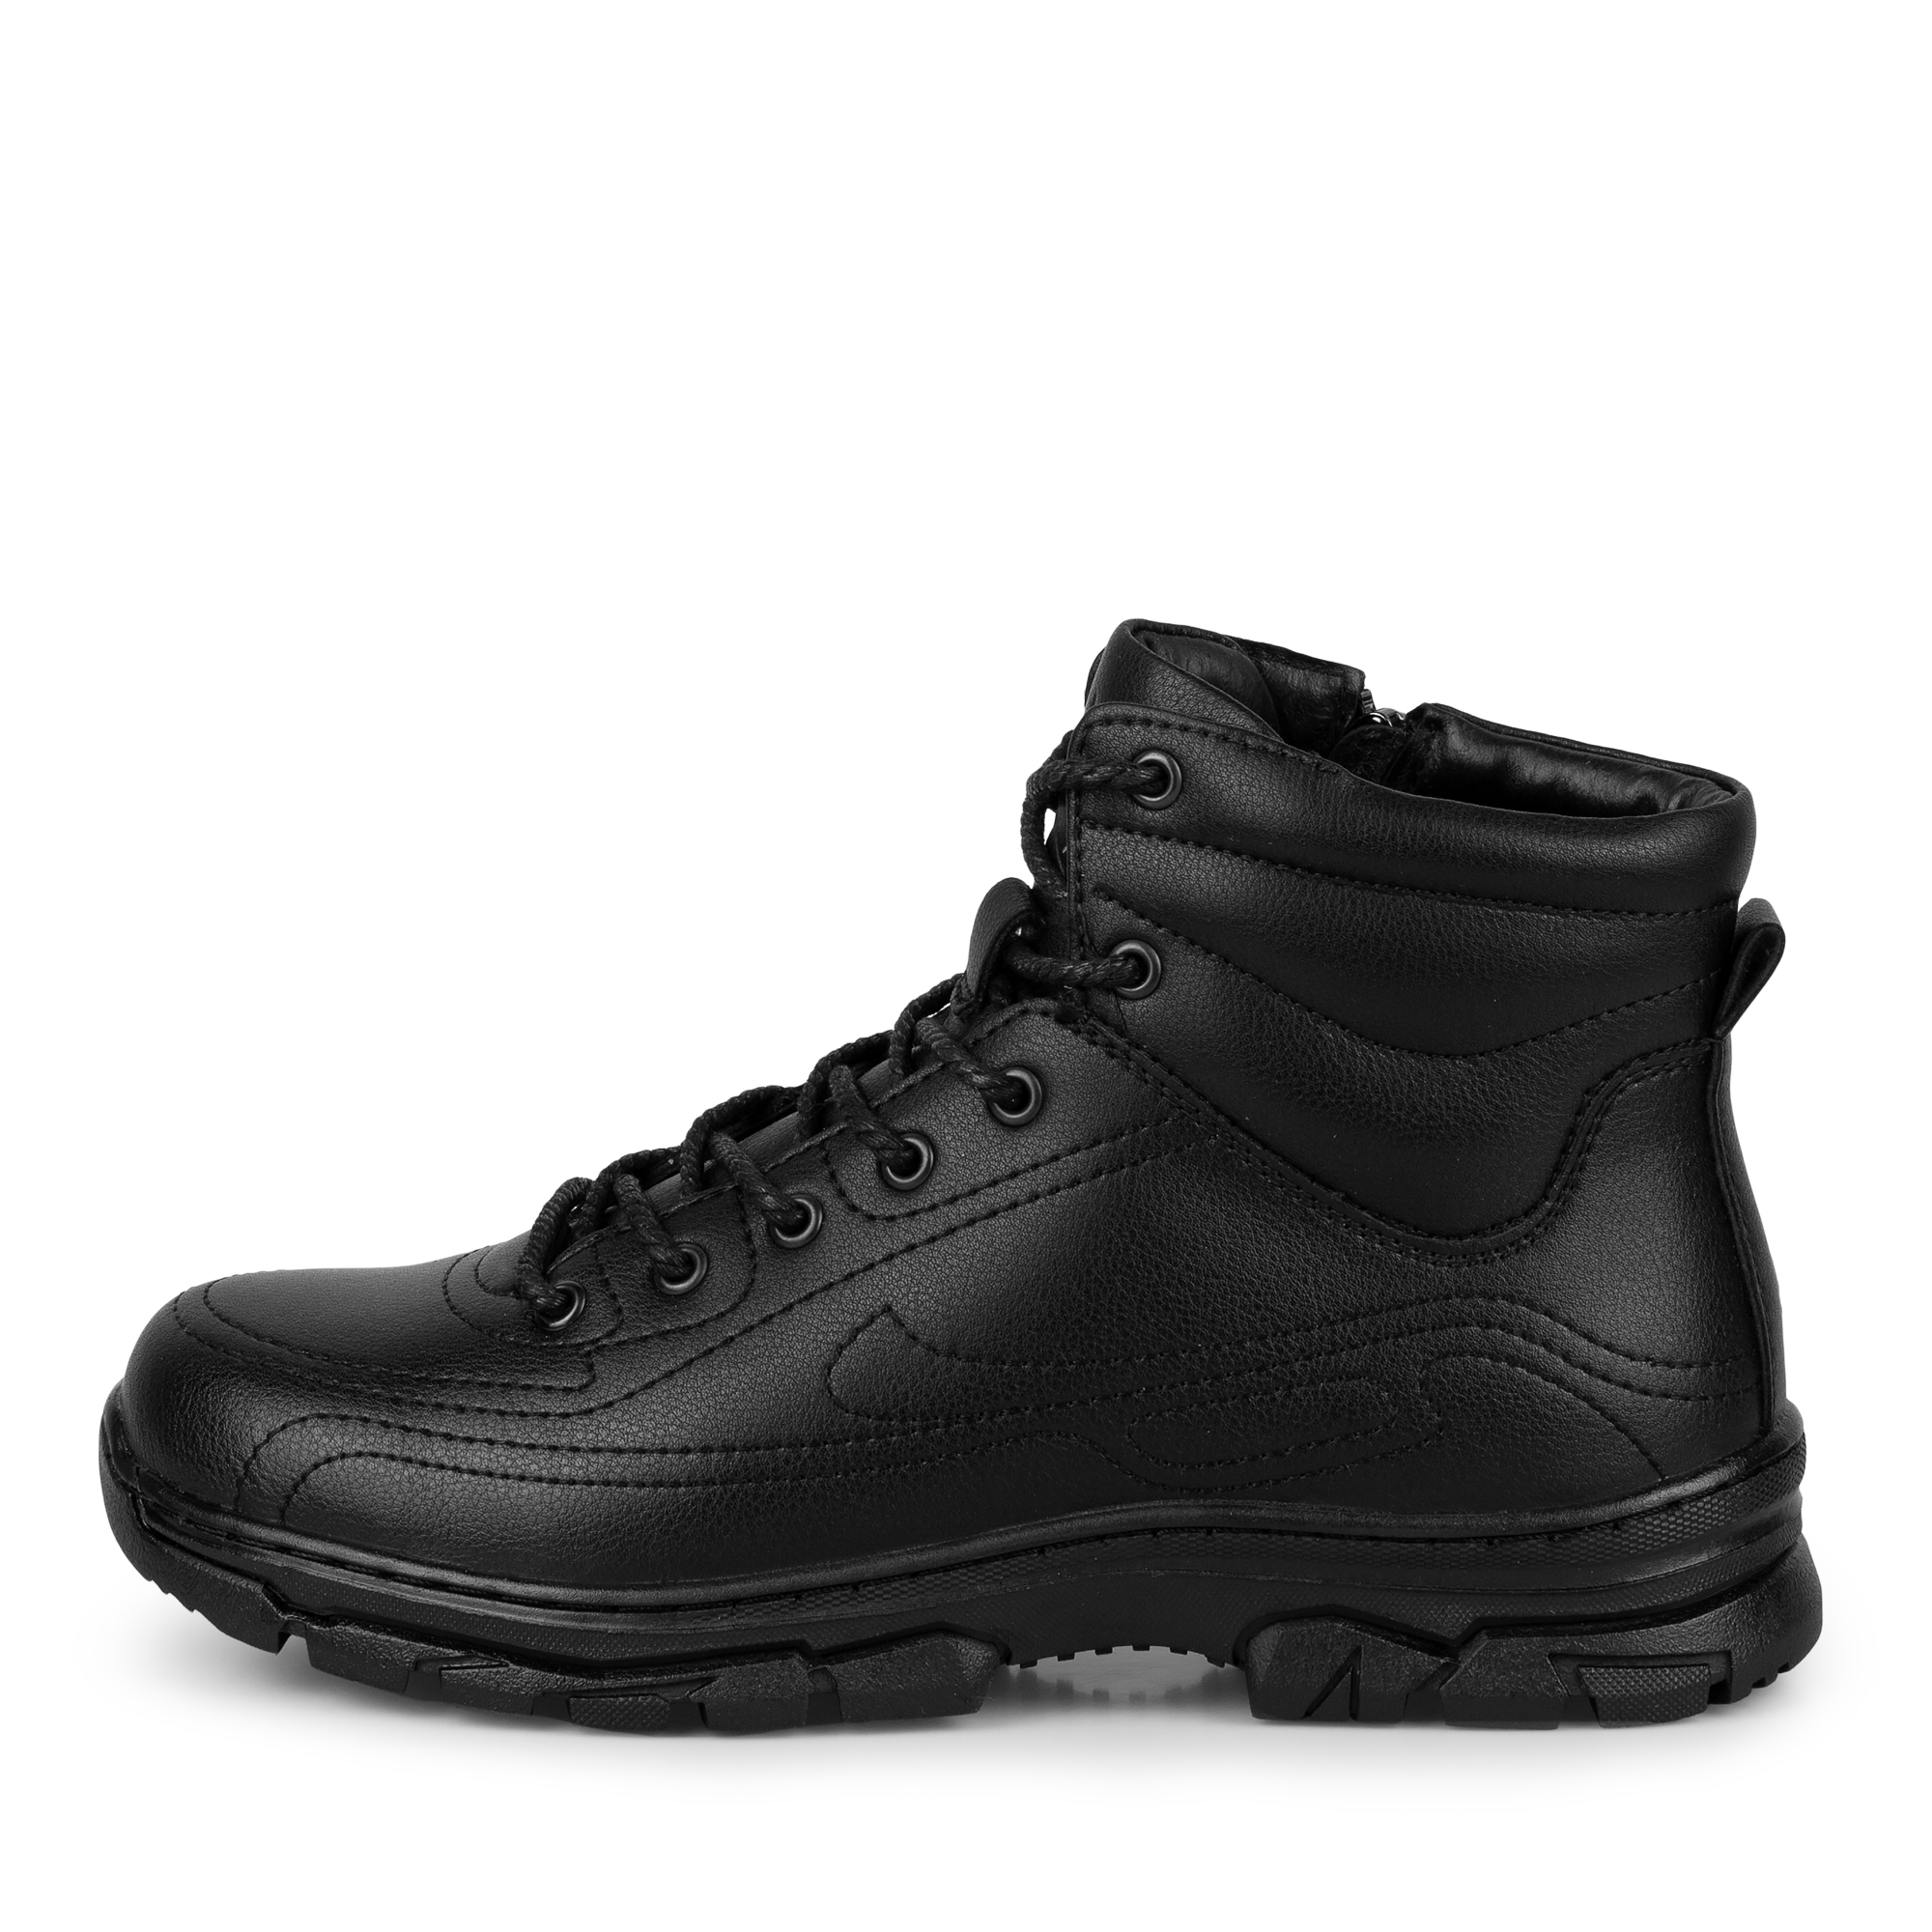 Обувь для мальчиков MUNZ YOUNG 116-498B-5603, цвет черный, размер 38